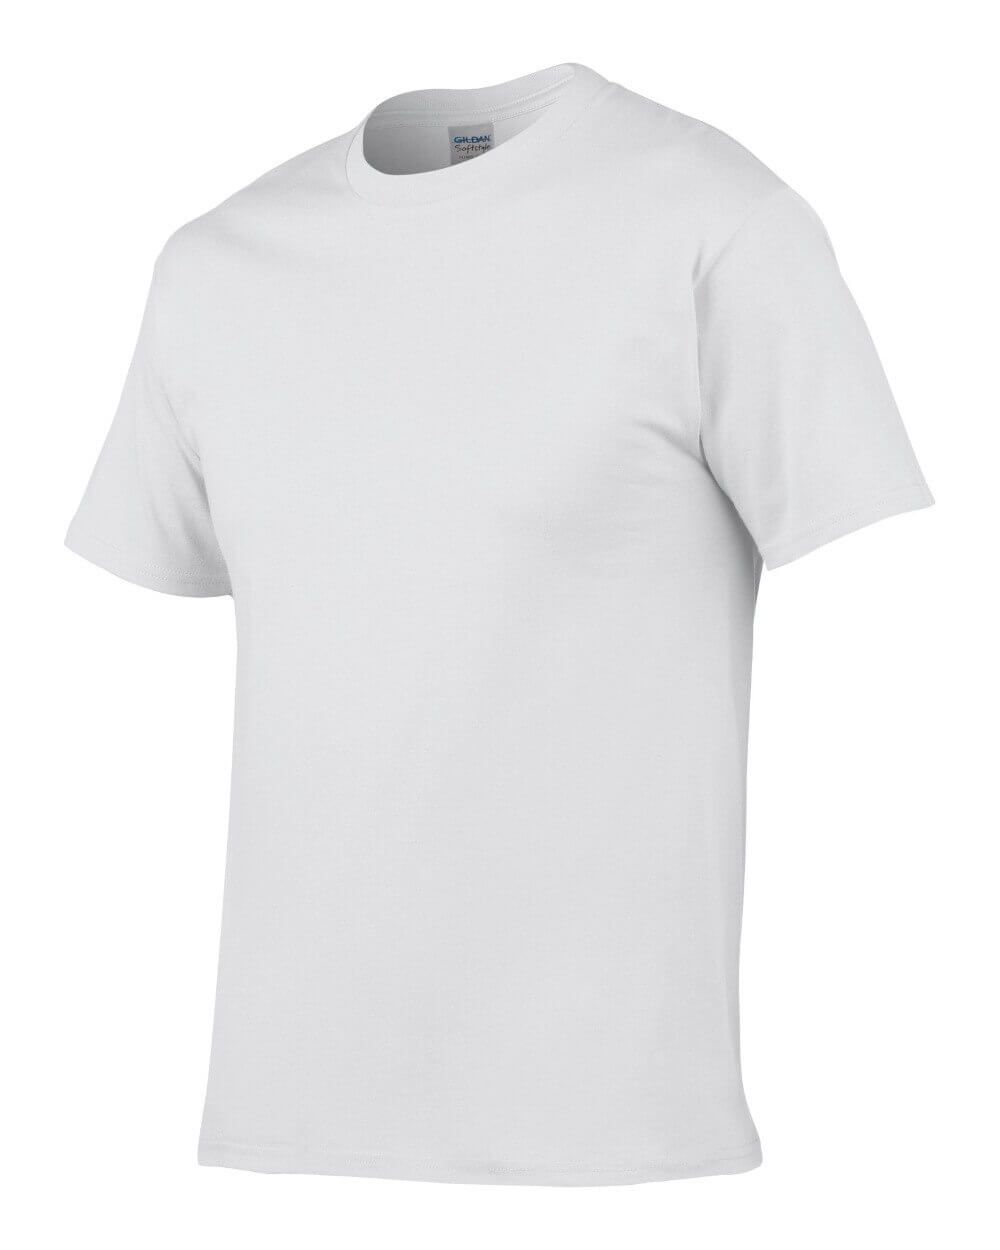 Camiseta ALGODÓN personalizable, material ecológico y sostenible. Tela de Algodón DIY color blanco nuclear